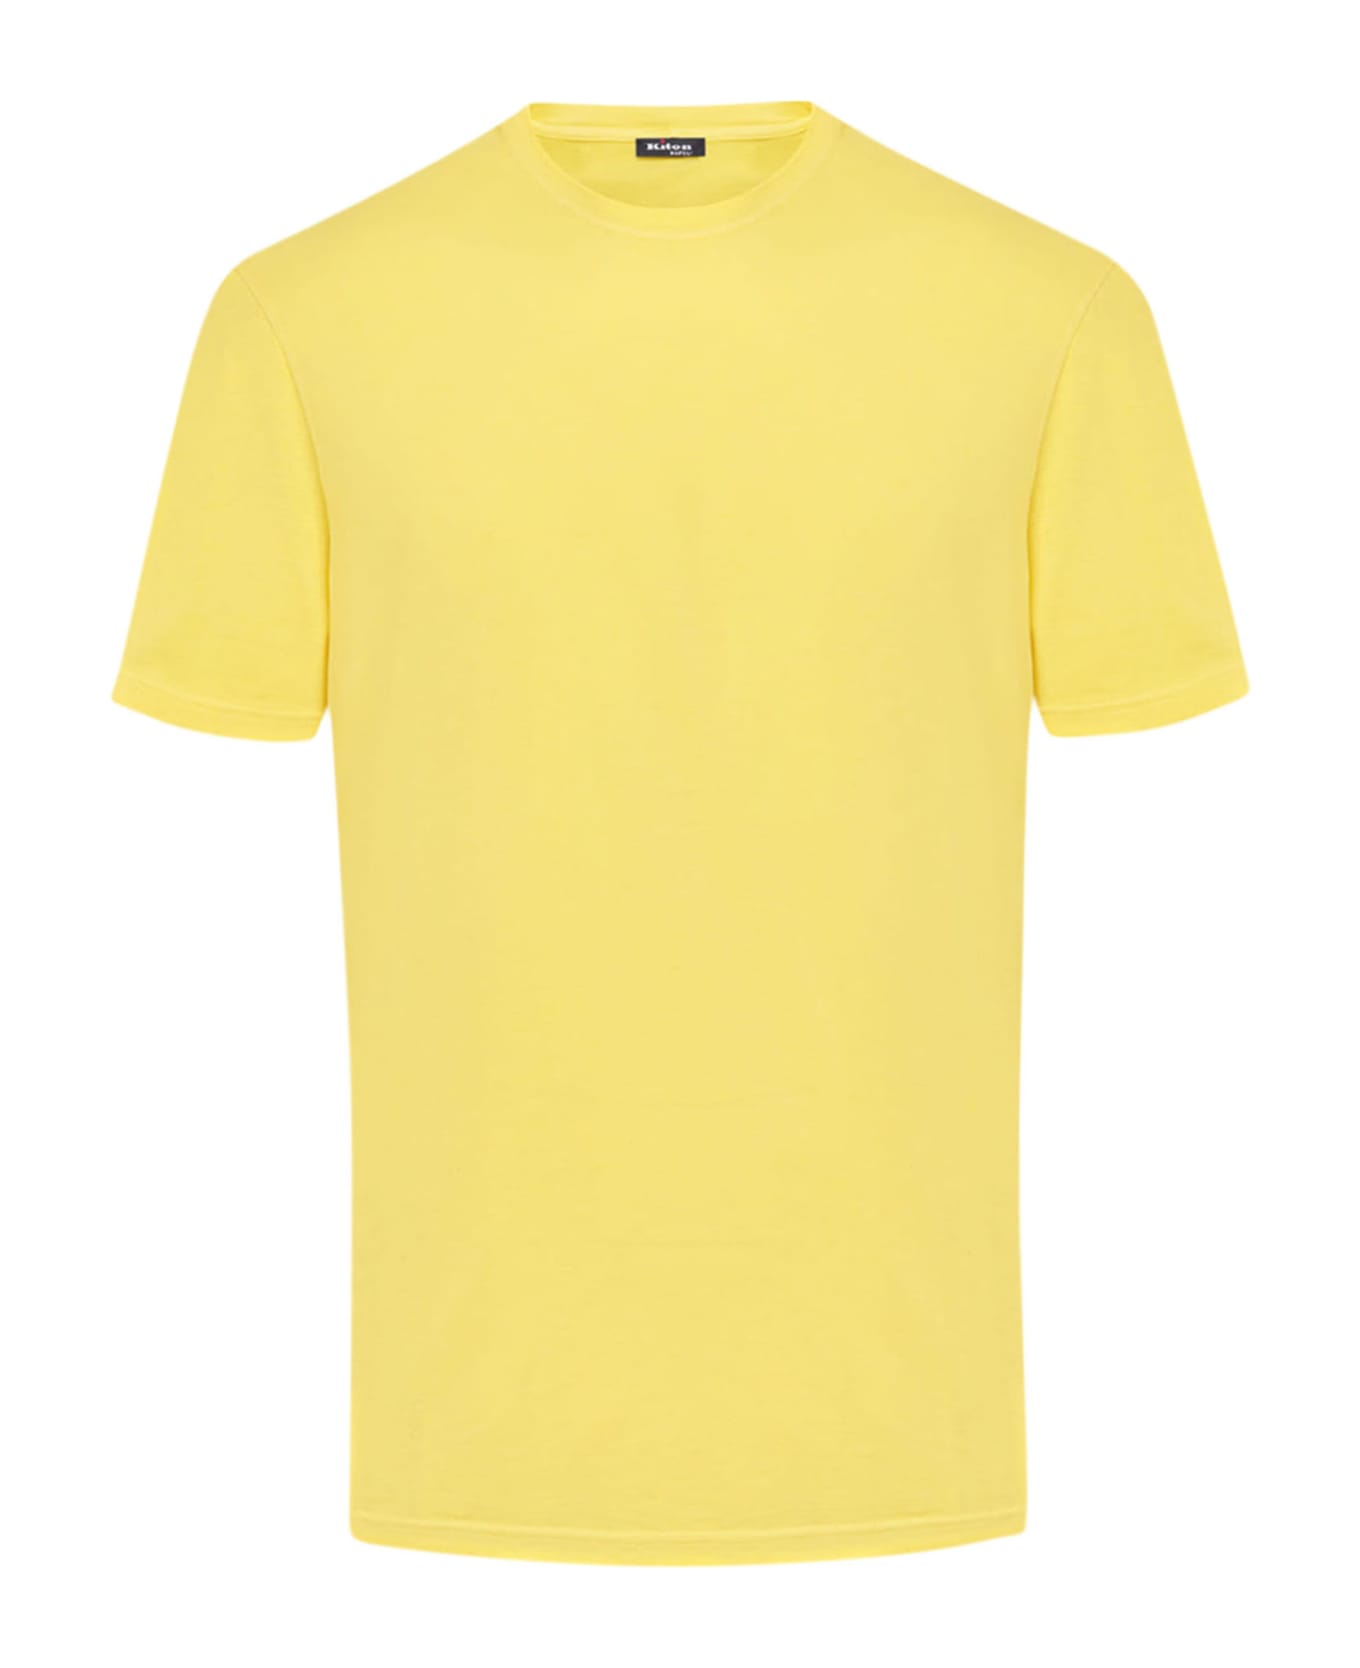 Kiton Jersey T-shirt S/s Cotton - YELLOW